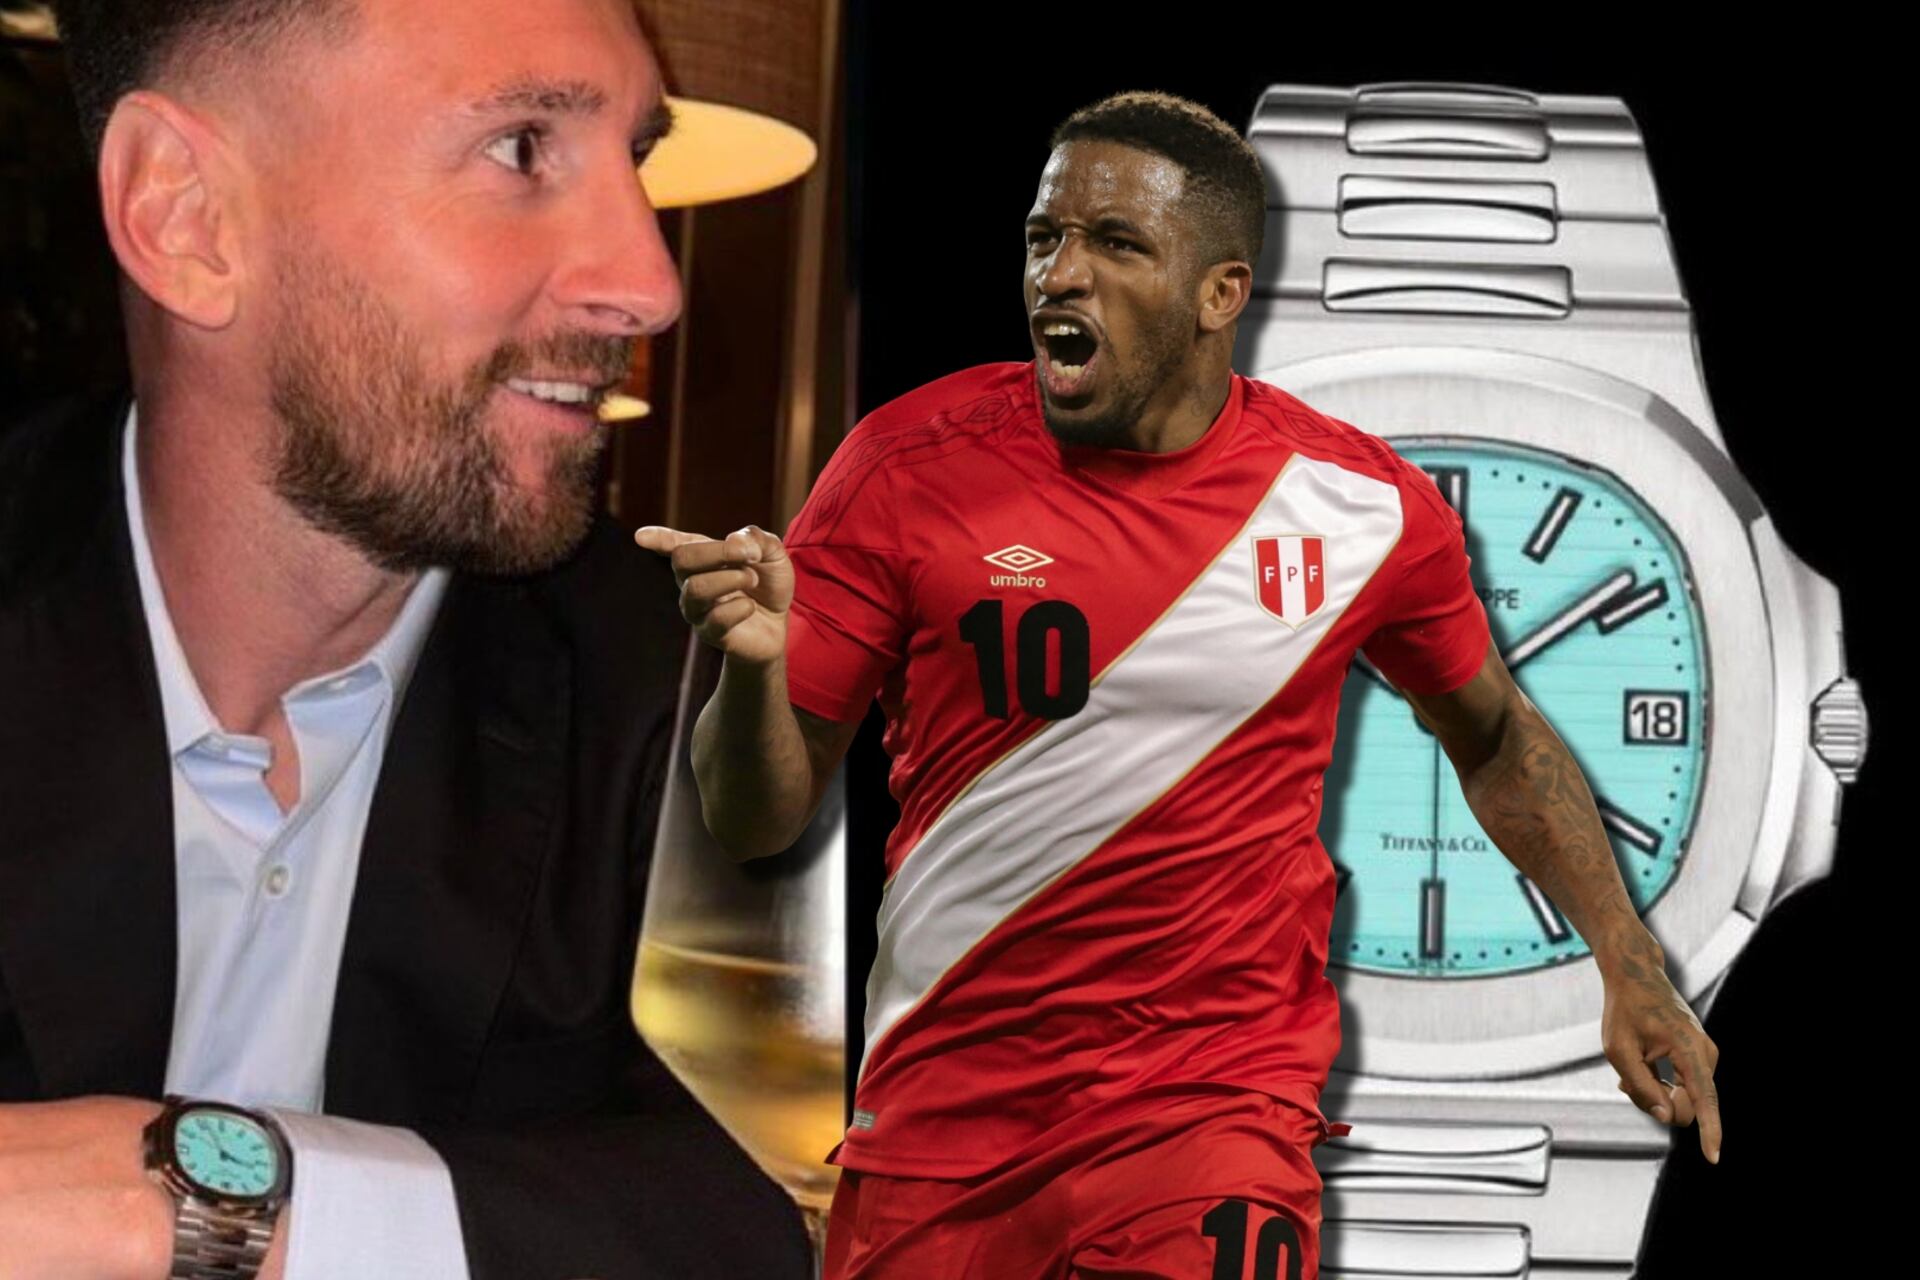 Mientras Messi compró uno de 52 mil, Farfán gastó 3 millones en este reloj